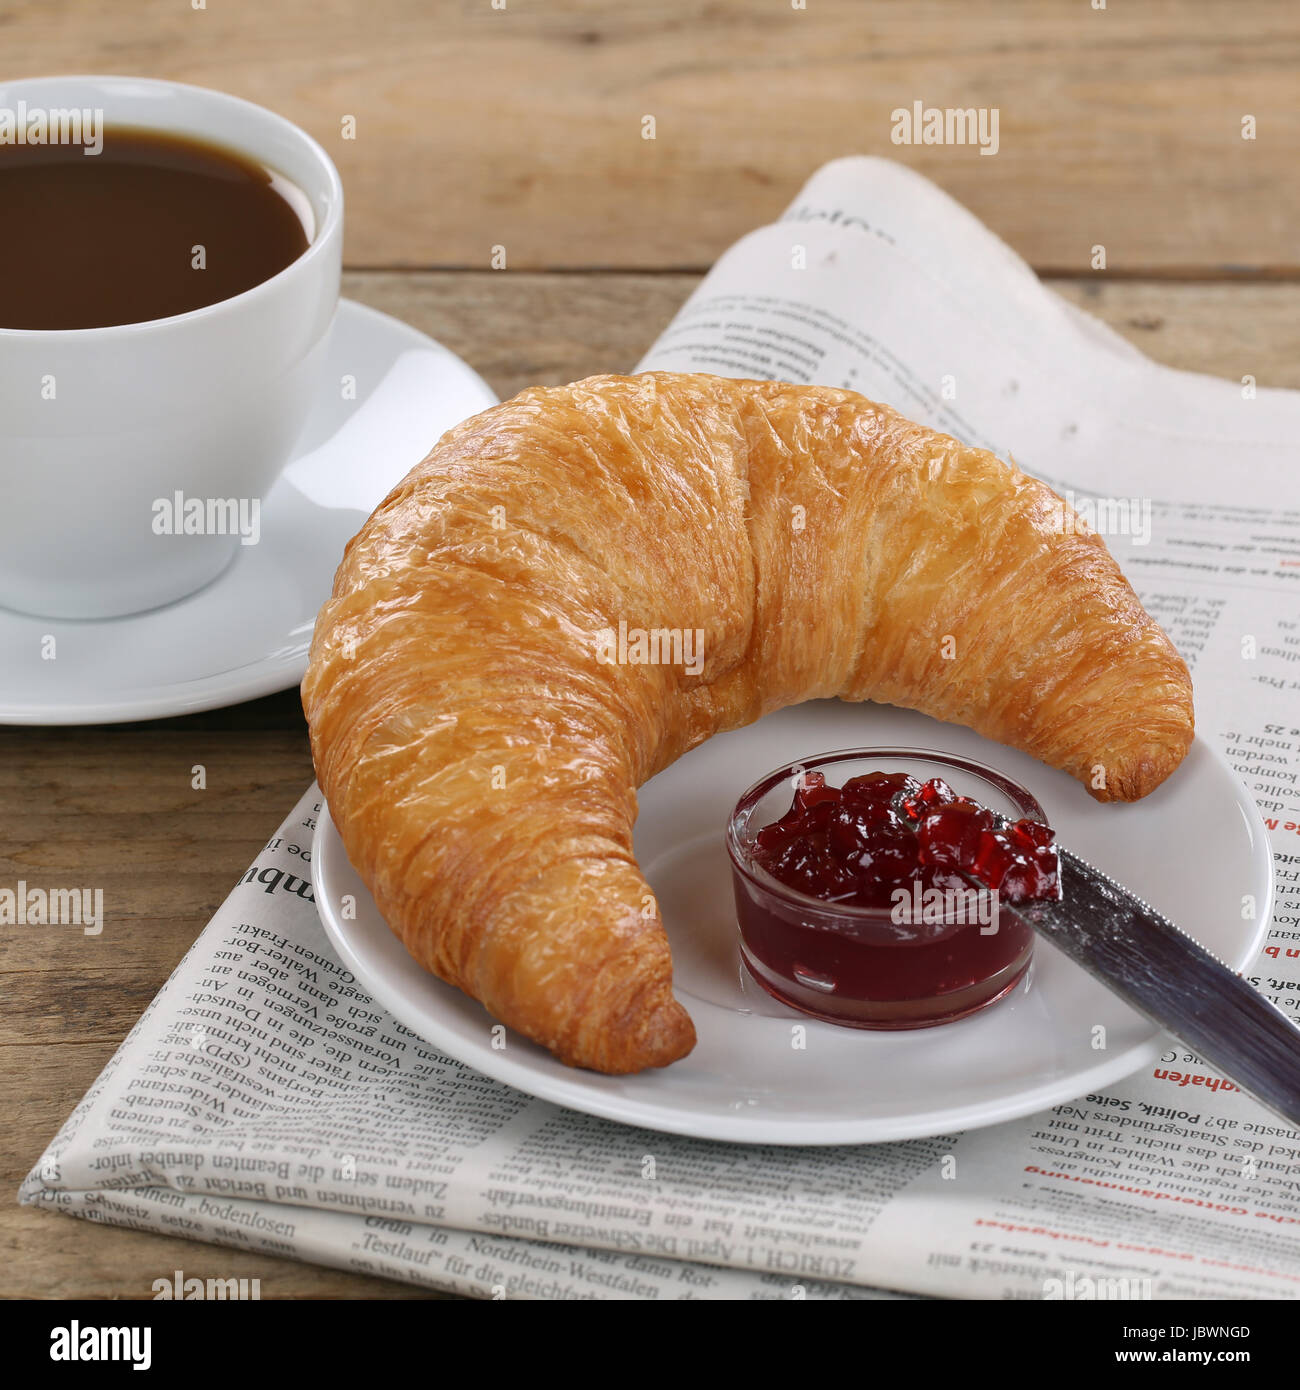 Business Frühstück mit Croissant, Marmelade, Kaffee und einer Tageszeitung Stock Photo